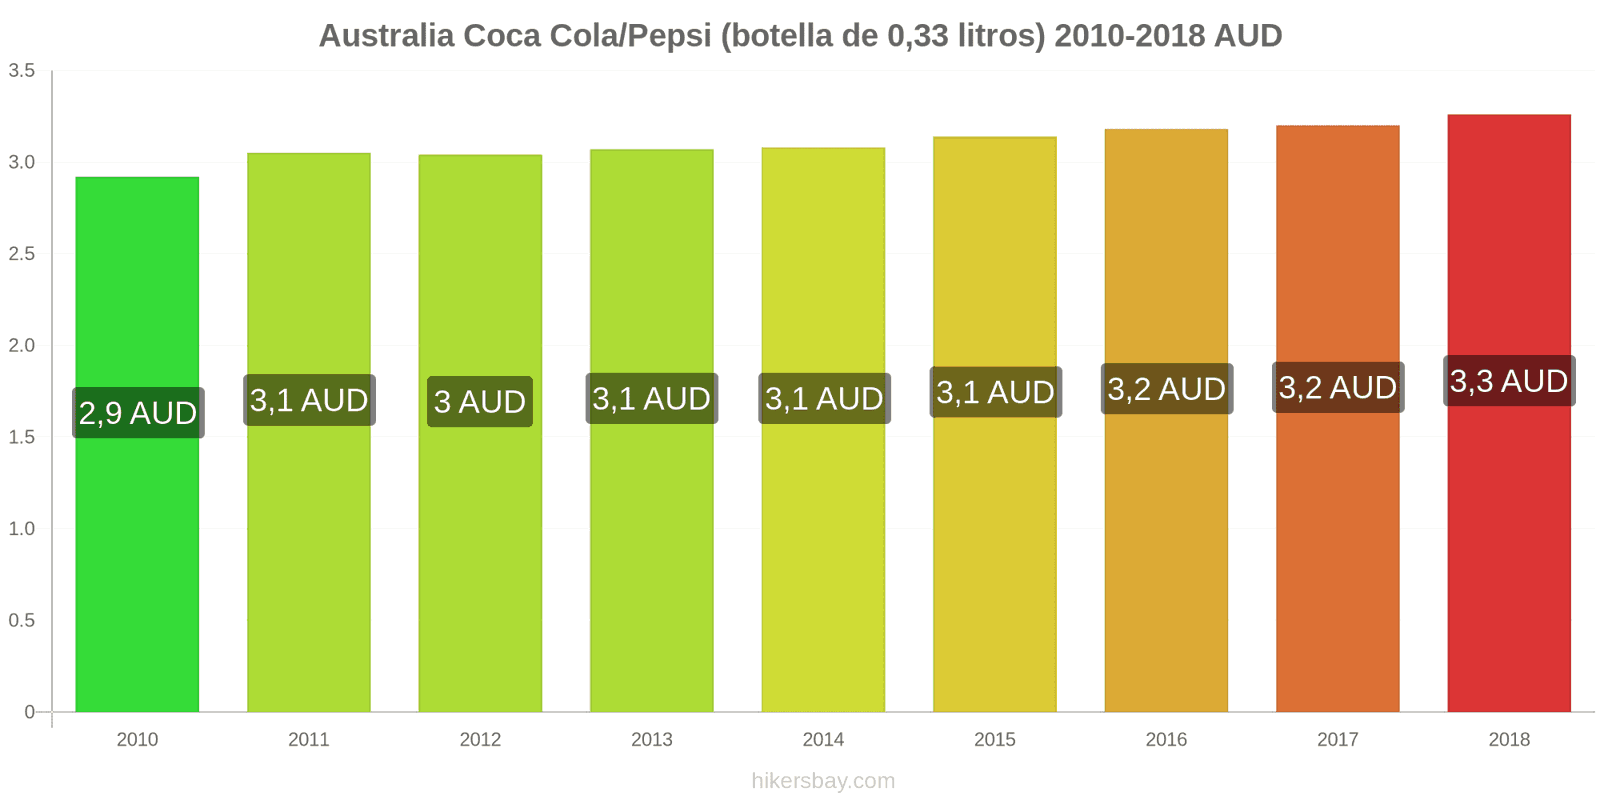 Australia cambios de precios Coca-Cola/Pepsi (botella de 0.33 litros) hikersbay.com